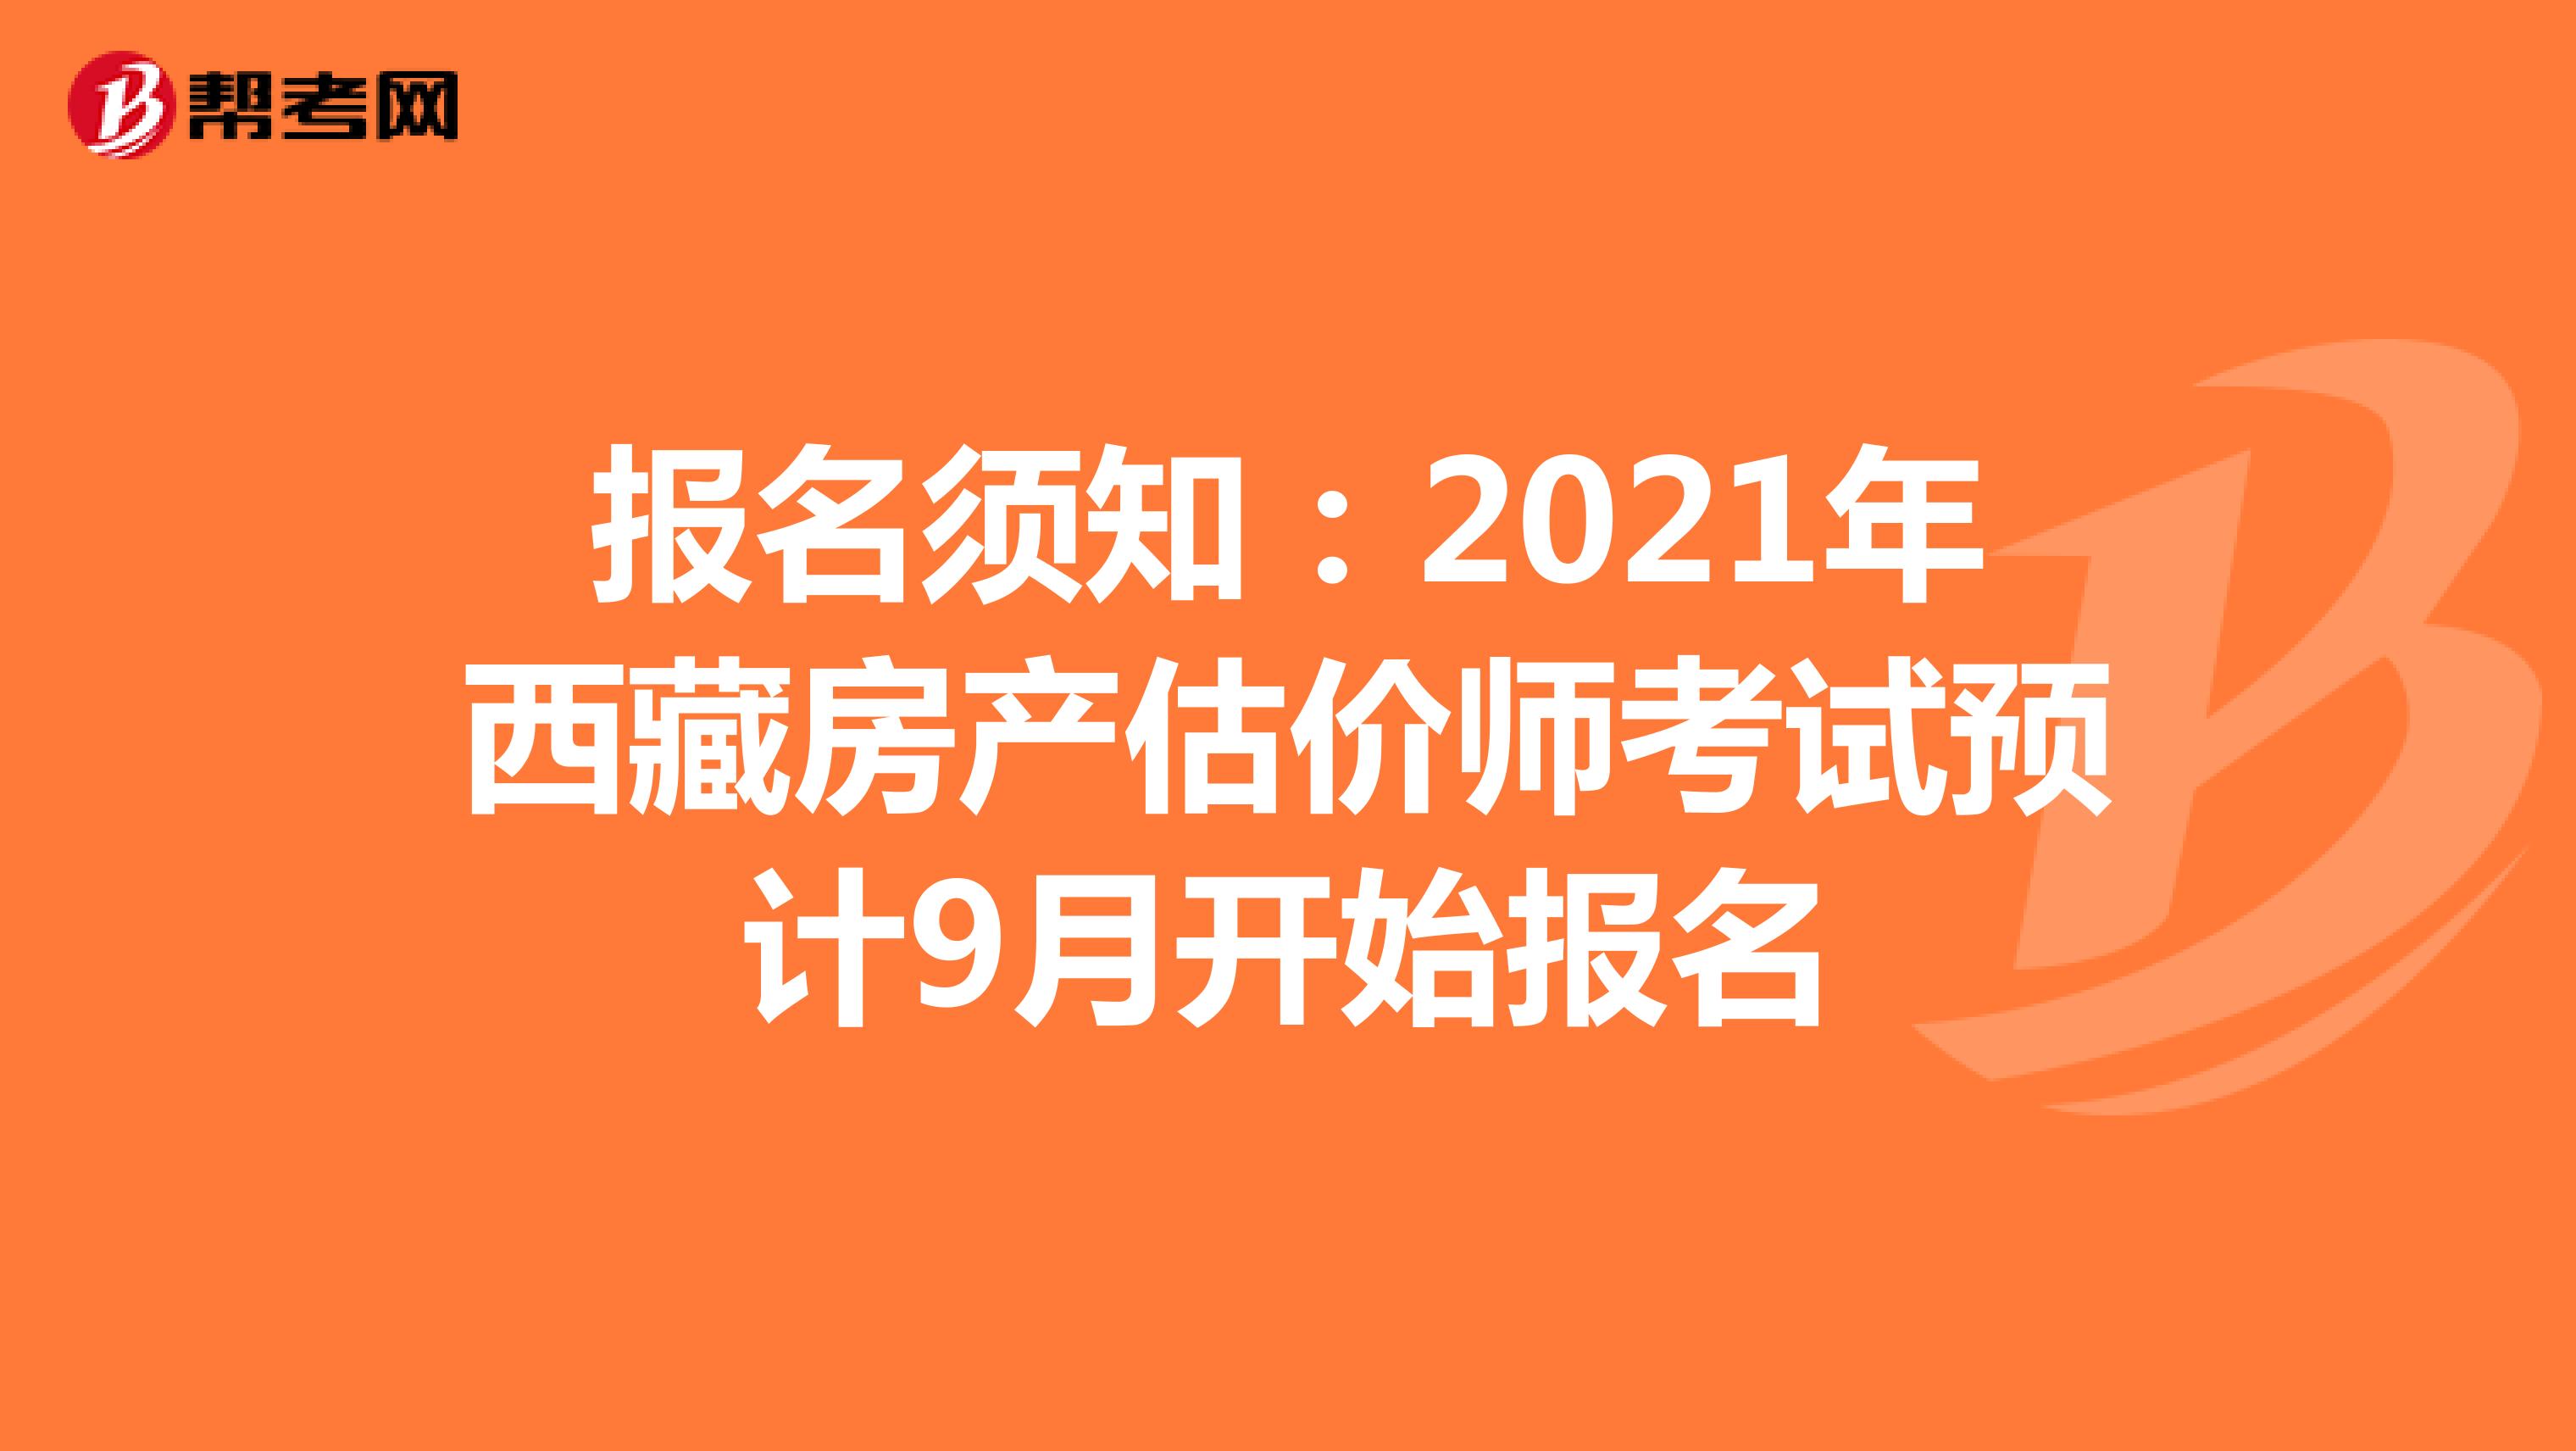 报名须知：2021年西藏房产估价师考试预计9月开始报名